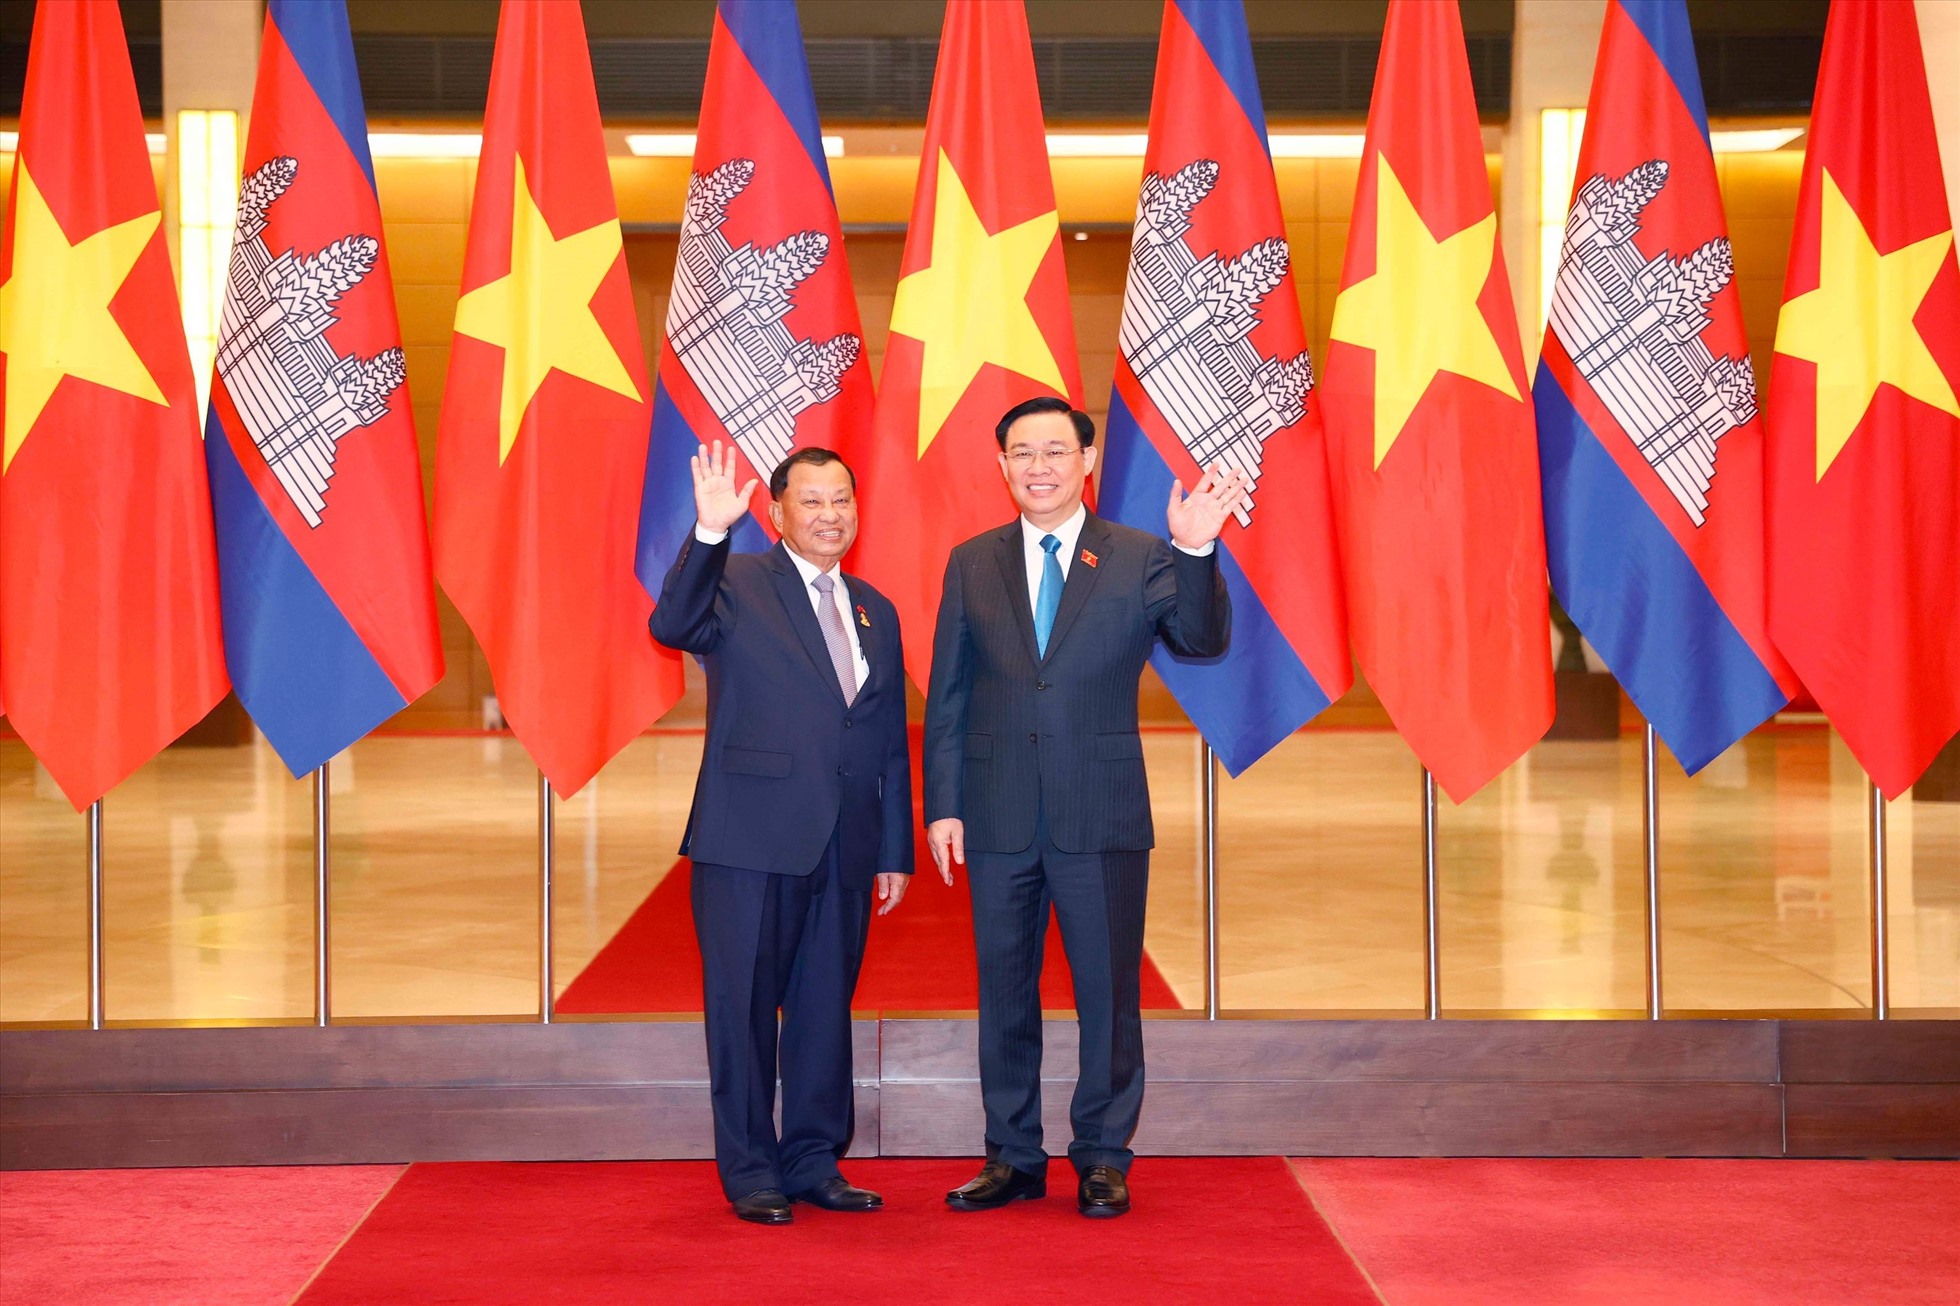 Tình hữu nghị Việt Nam-Campuchia là đề tài được đánh giá rất cao trong địa chính trị và ngoại giao. Hai nước đã có nhiều chuyến thăm chính thức cùng nhau nhằm thắt chặt tình đoàn kết. Hãy xem hình ảnh về những sự kiện gắn kết và tình hữu nghị giữa hai nước.